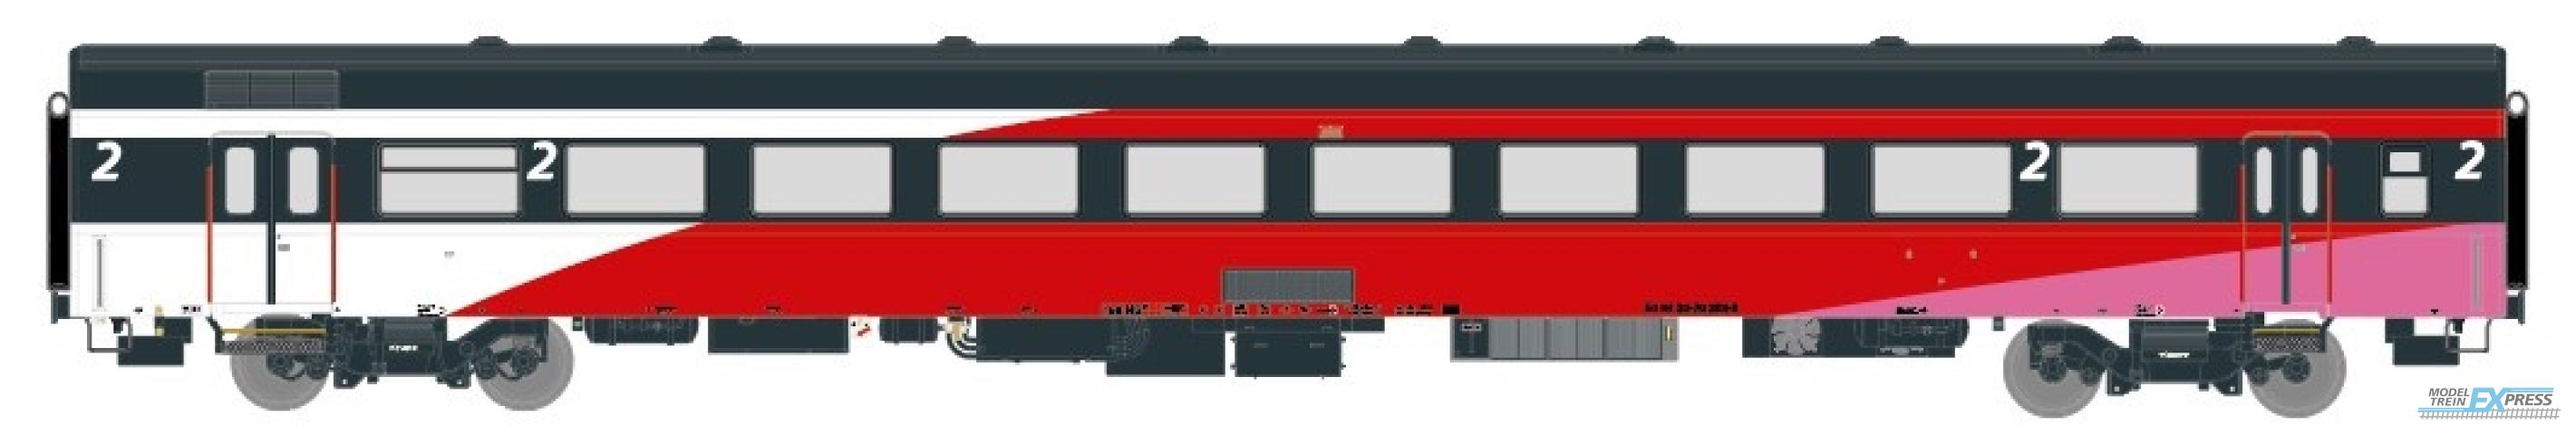 Exact-train 11130 NS ICRm Hispeed 1 (Amsterdam - Brussel) für die Hsl-Strecke eingesetzt Endwagen B(Weiss/Rot/Rose), Ep. V